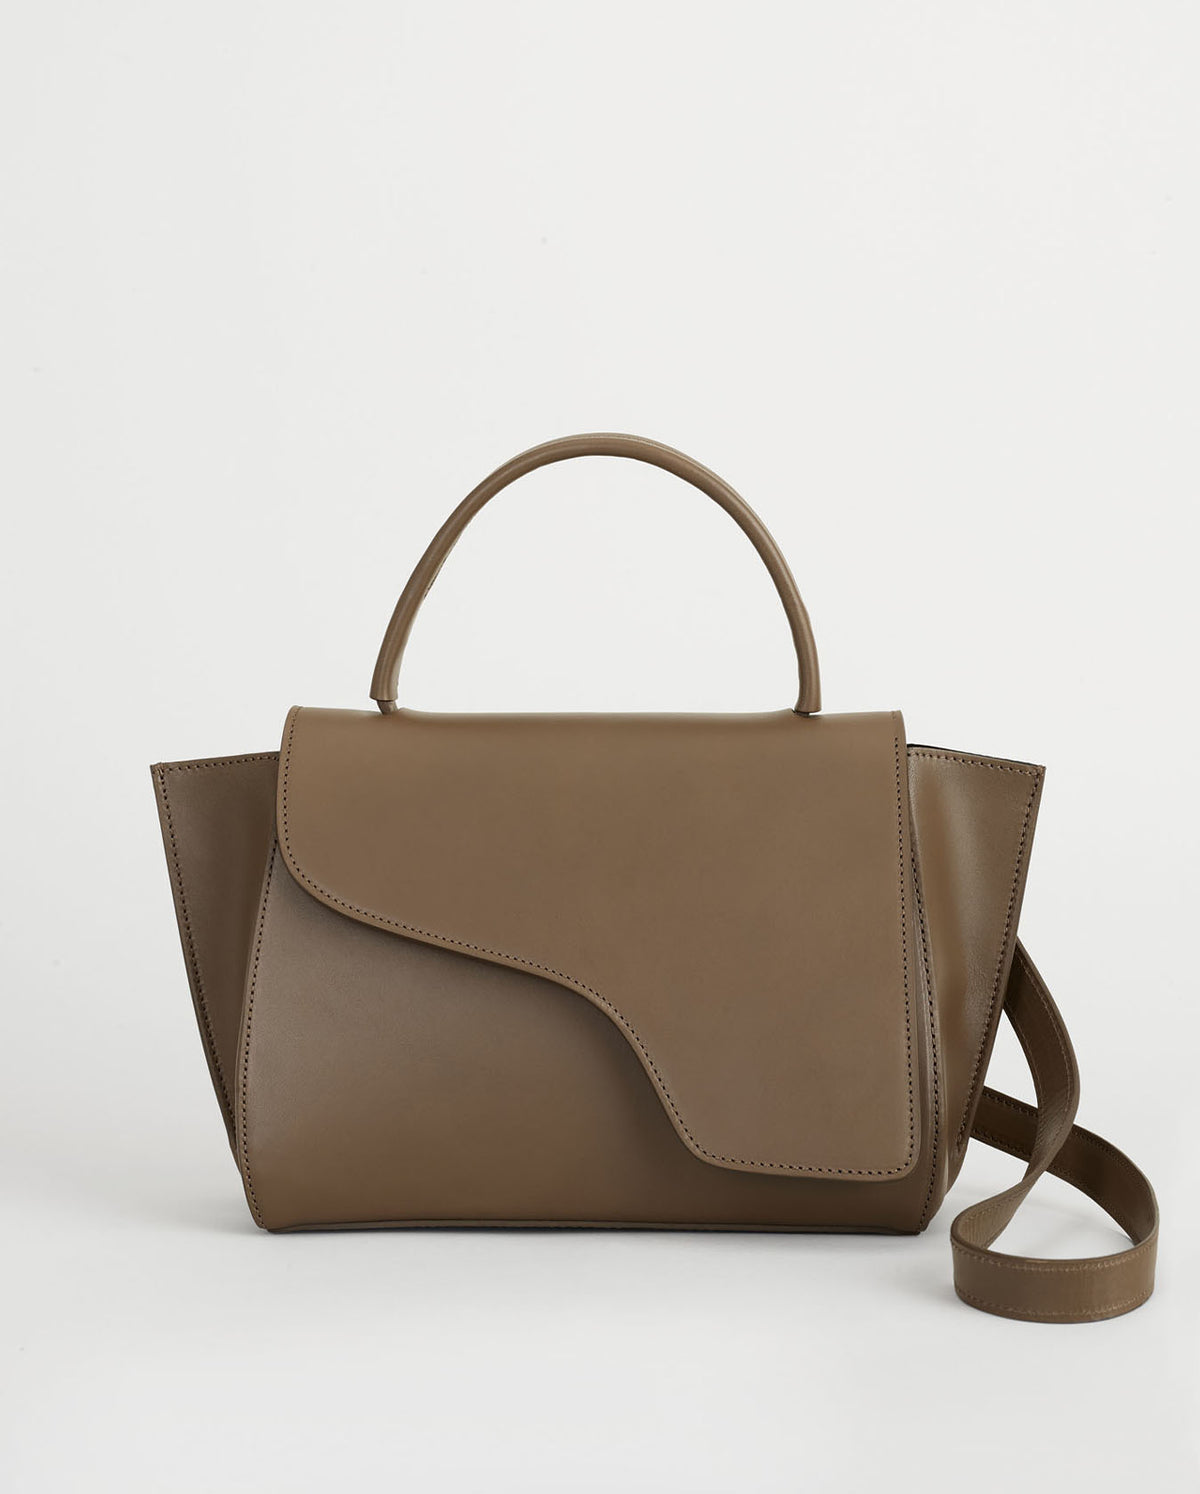 Arezzo Khaki Brown Leather Handbag